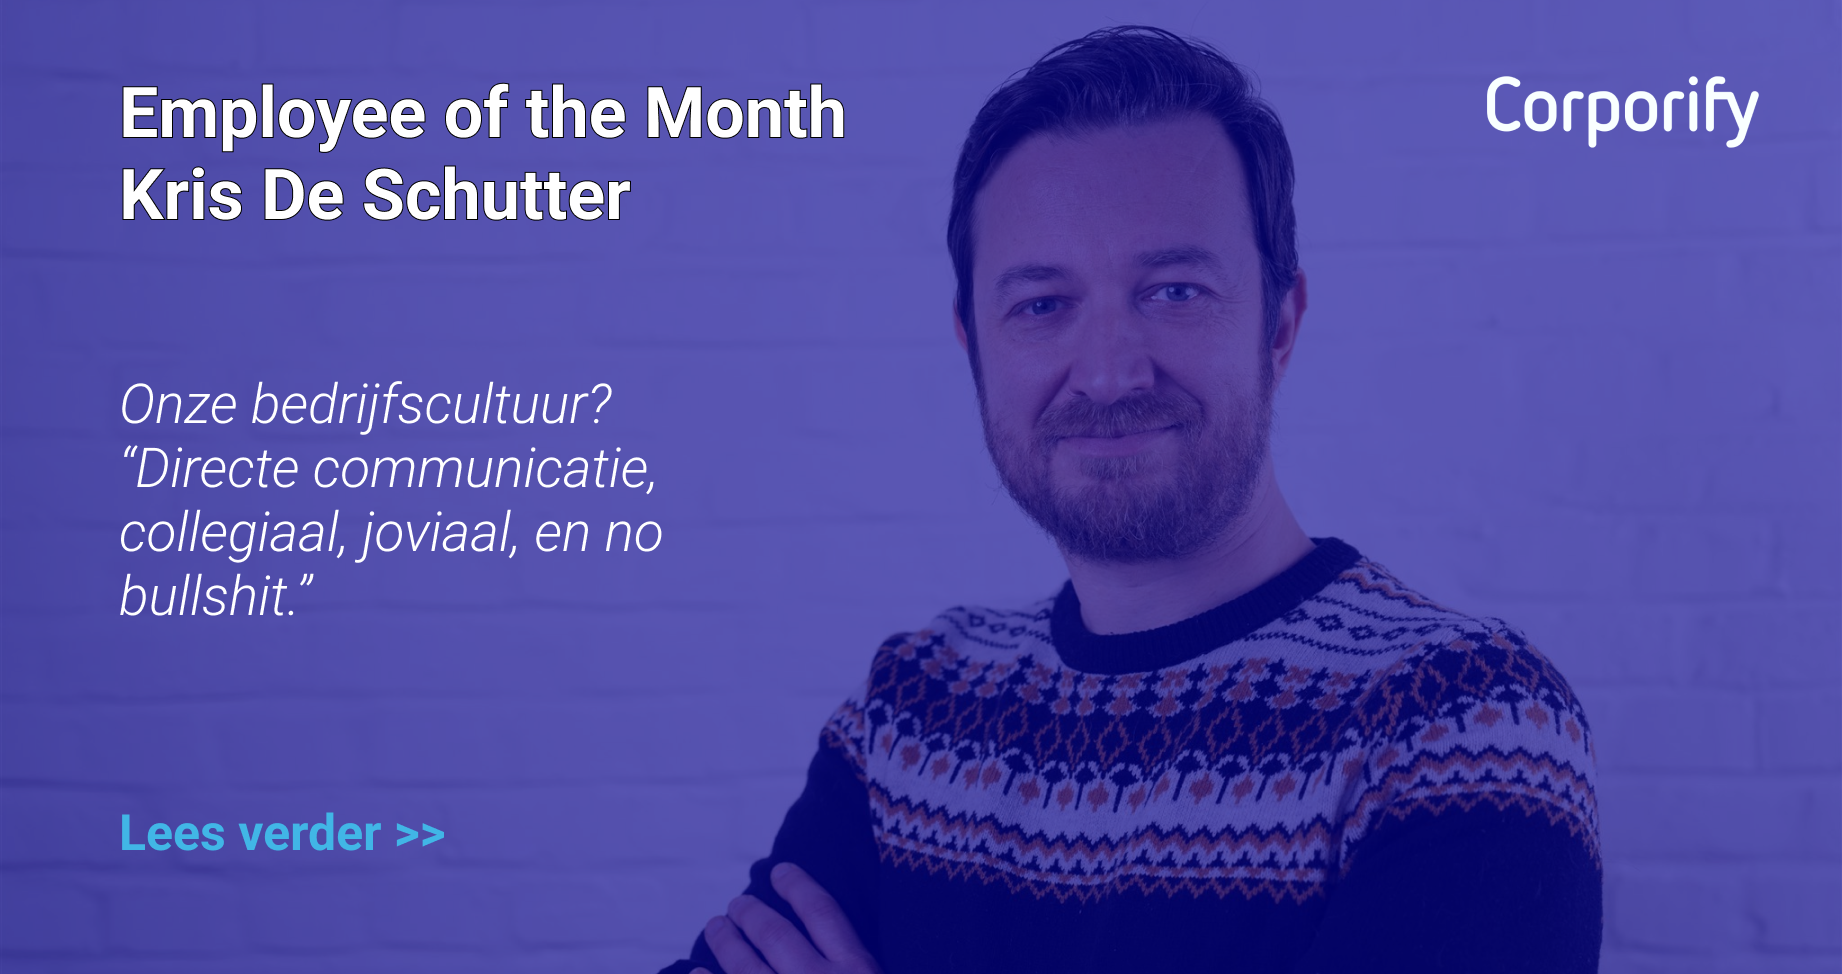 Employee of the Month - Kris De Schutter